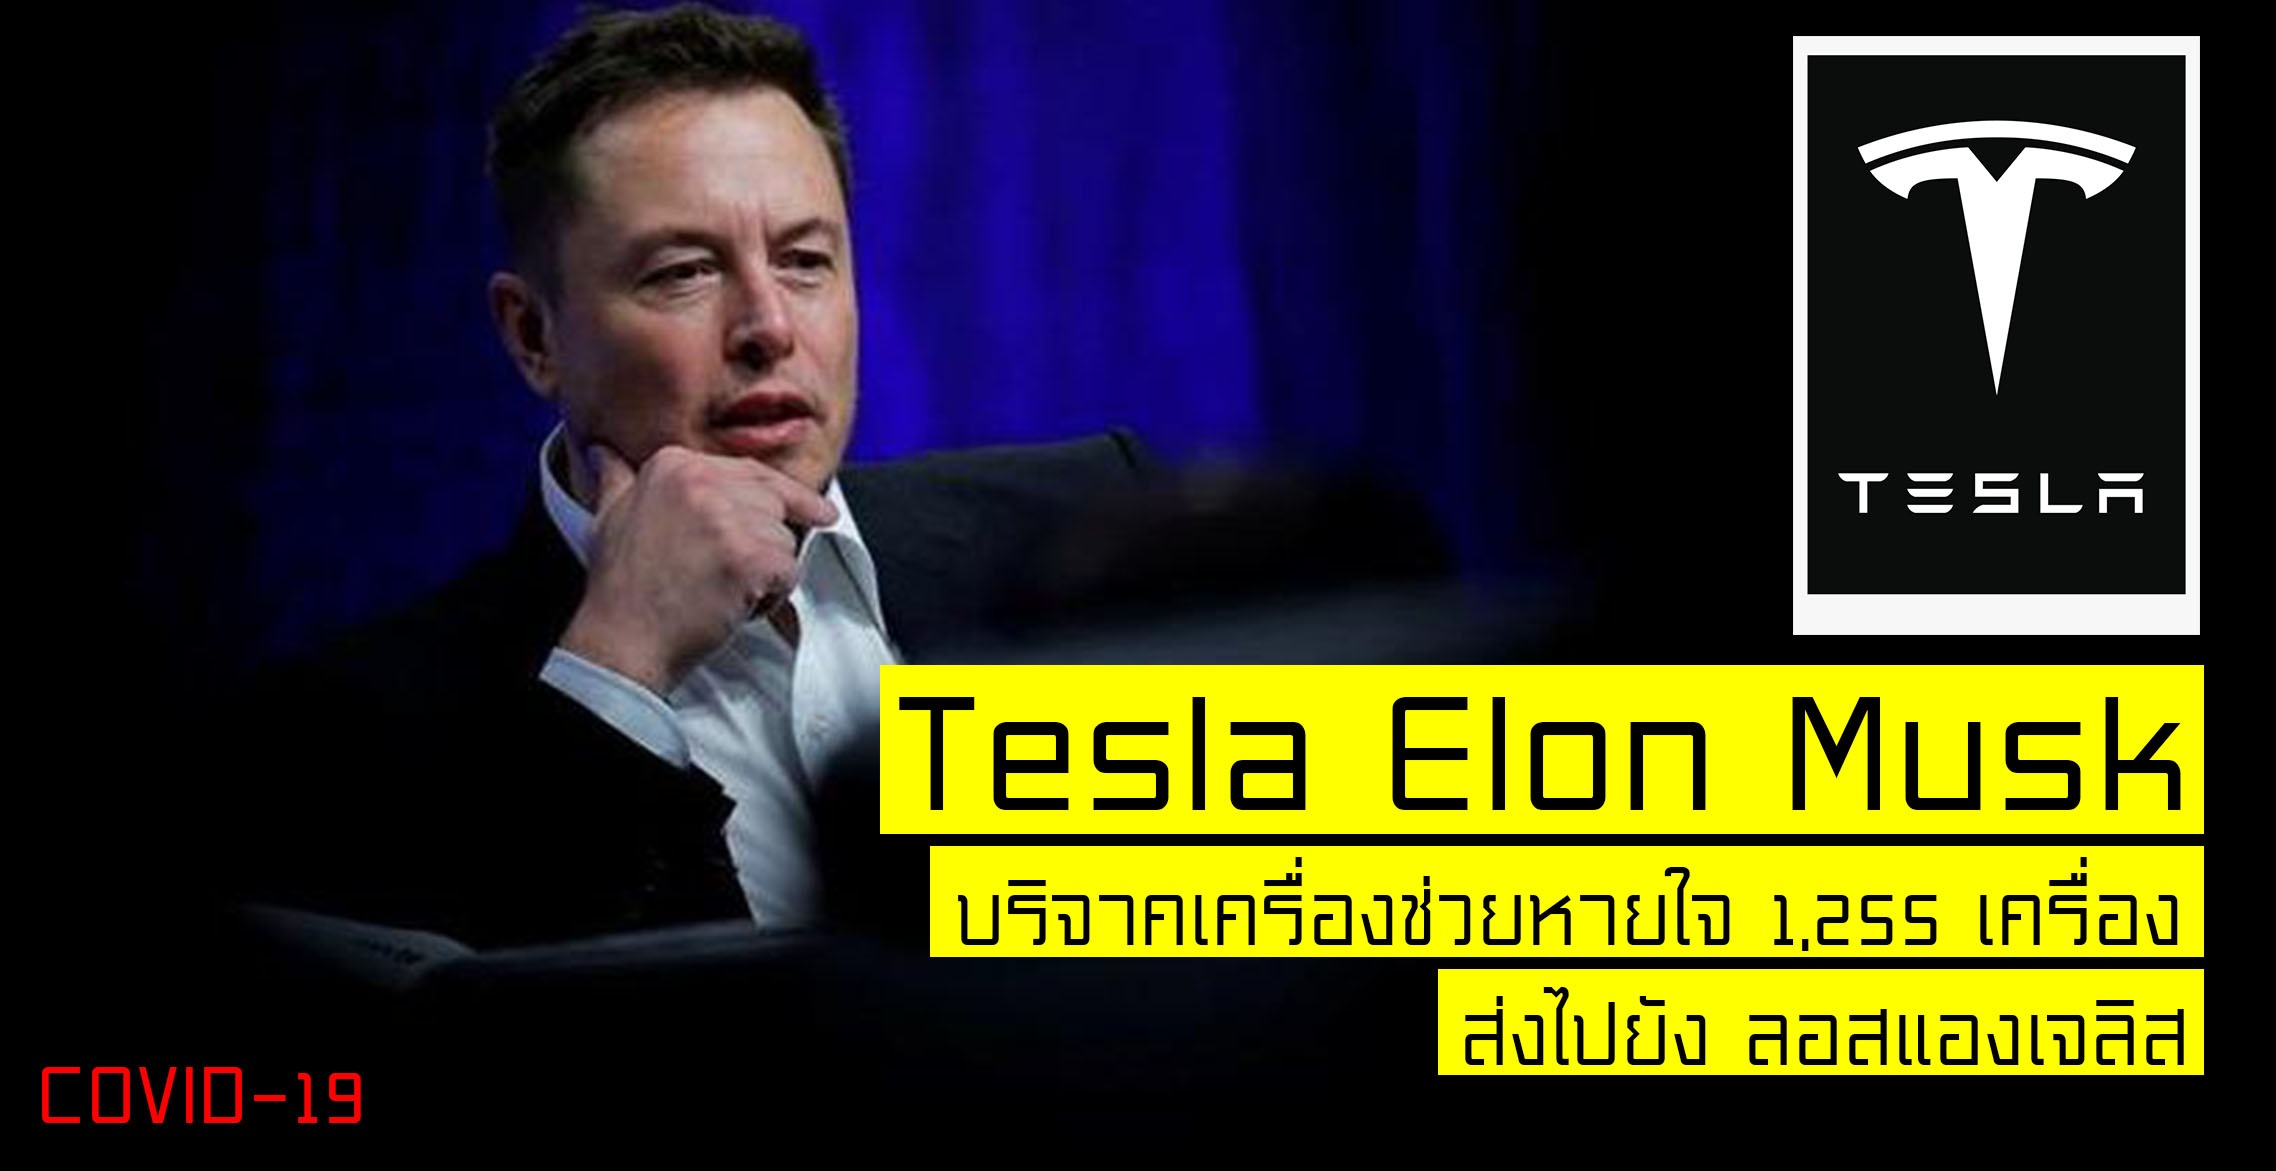 Elon Musk ซีอีโอ Tesla บริจาคเครื่องช่วยหายใจ 1,255 เครื่อง สู้ COVID-19 ใน ลอสแองเจลิส